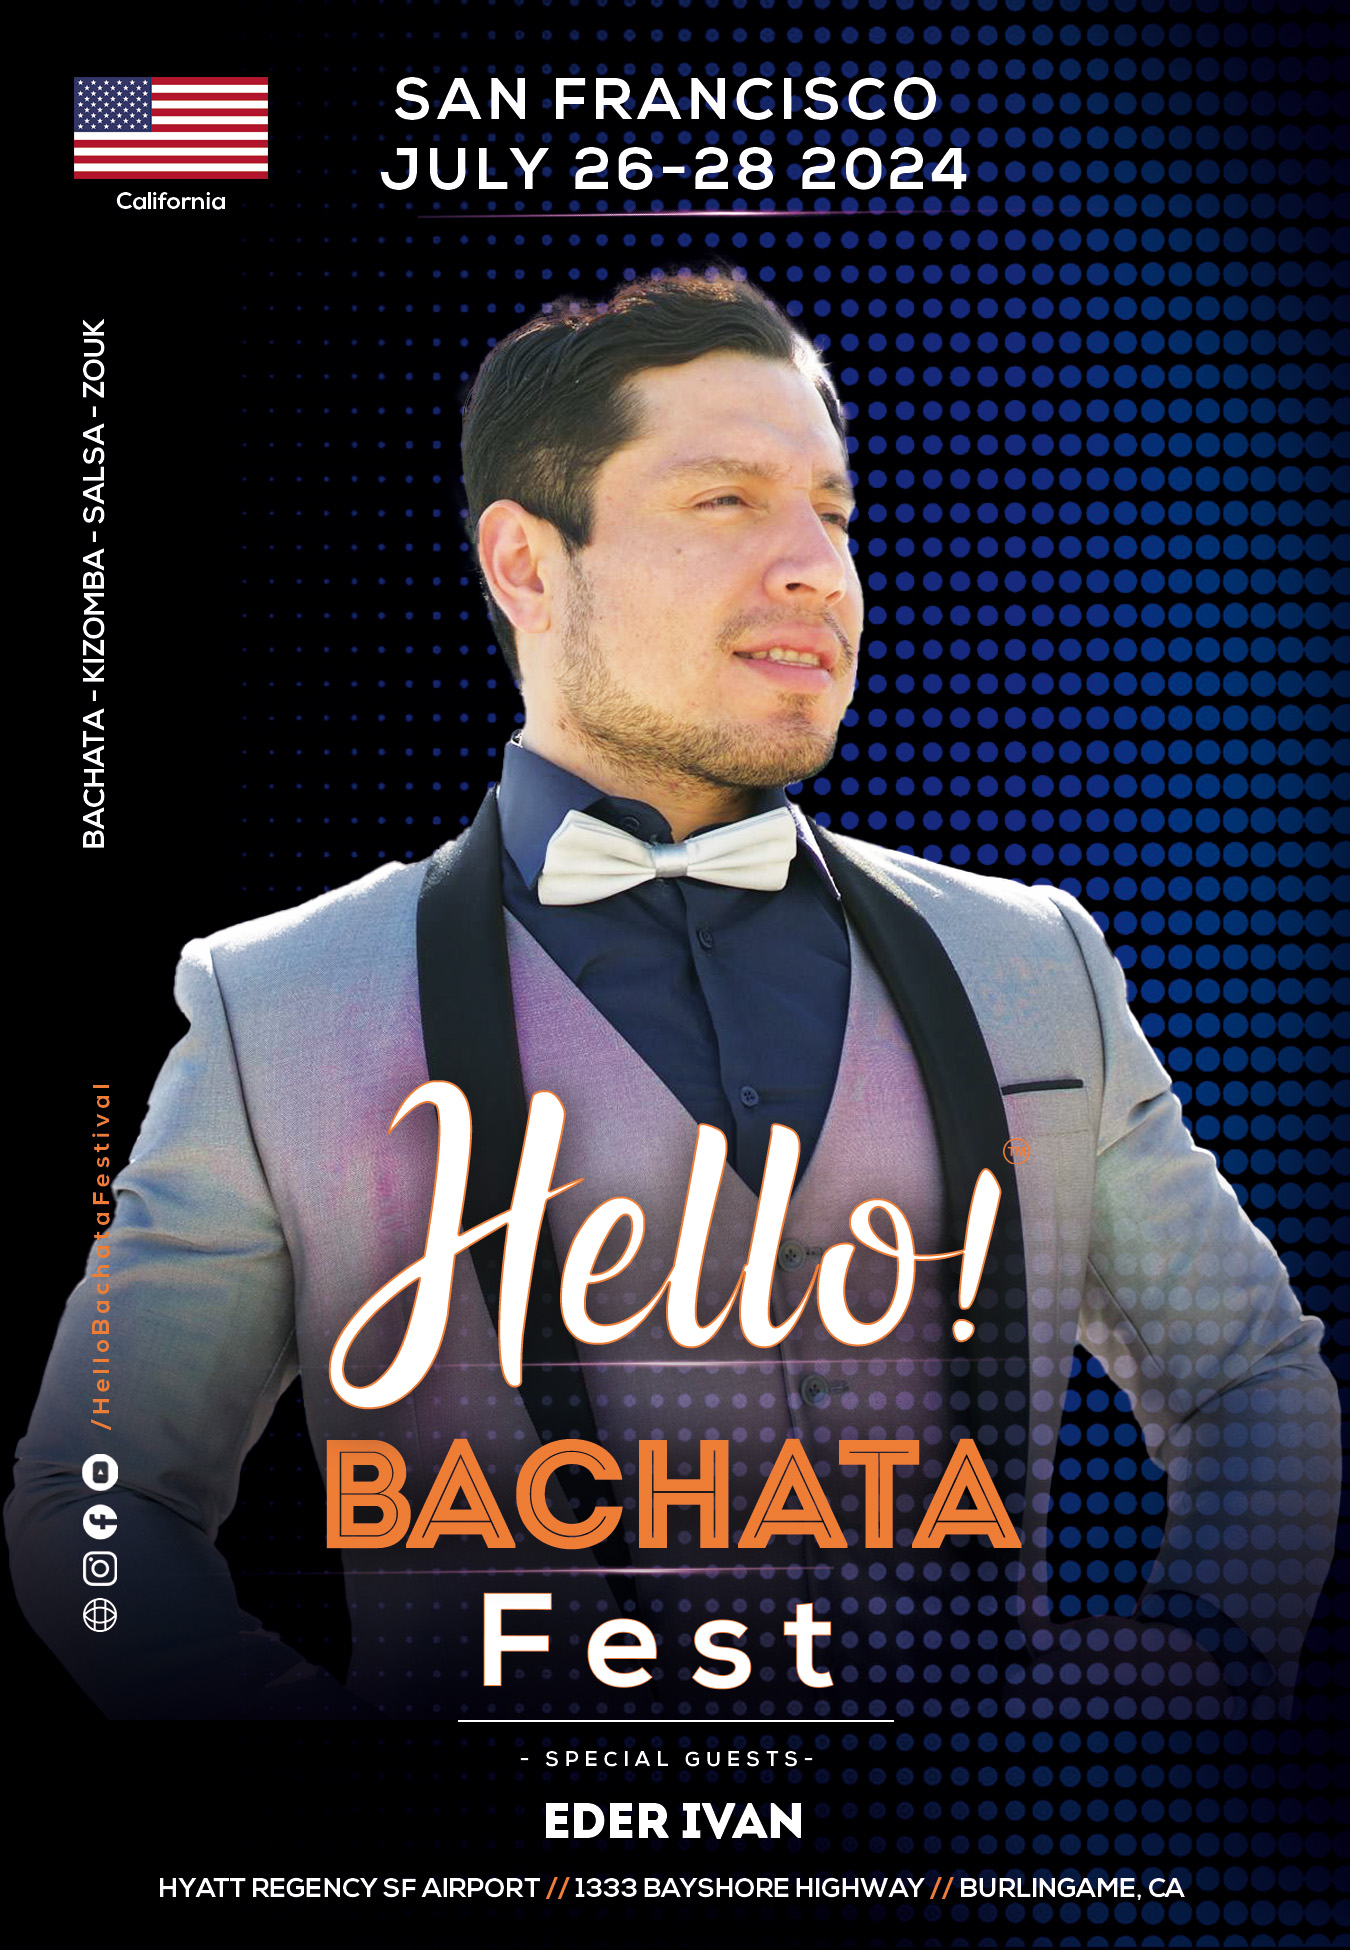 Hello! Bachata Fest - Eder Ivan - Salsa